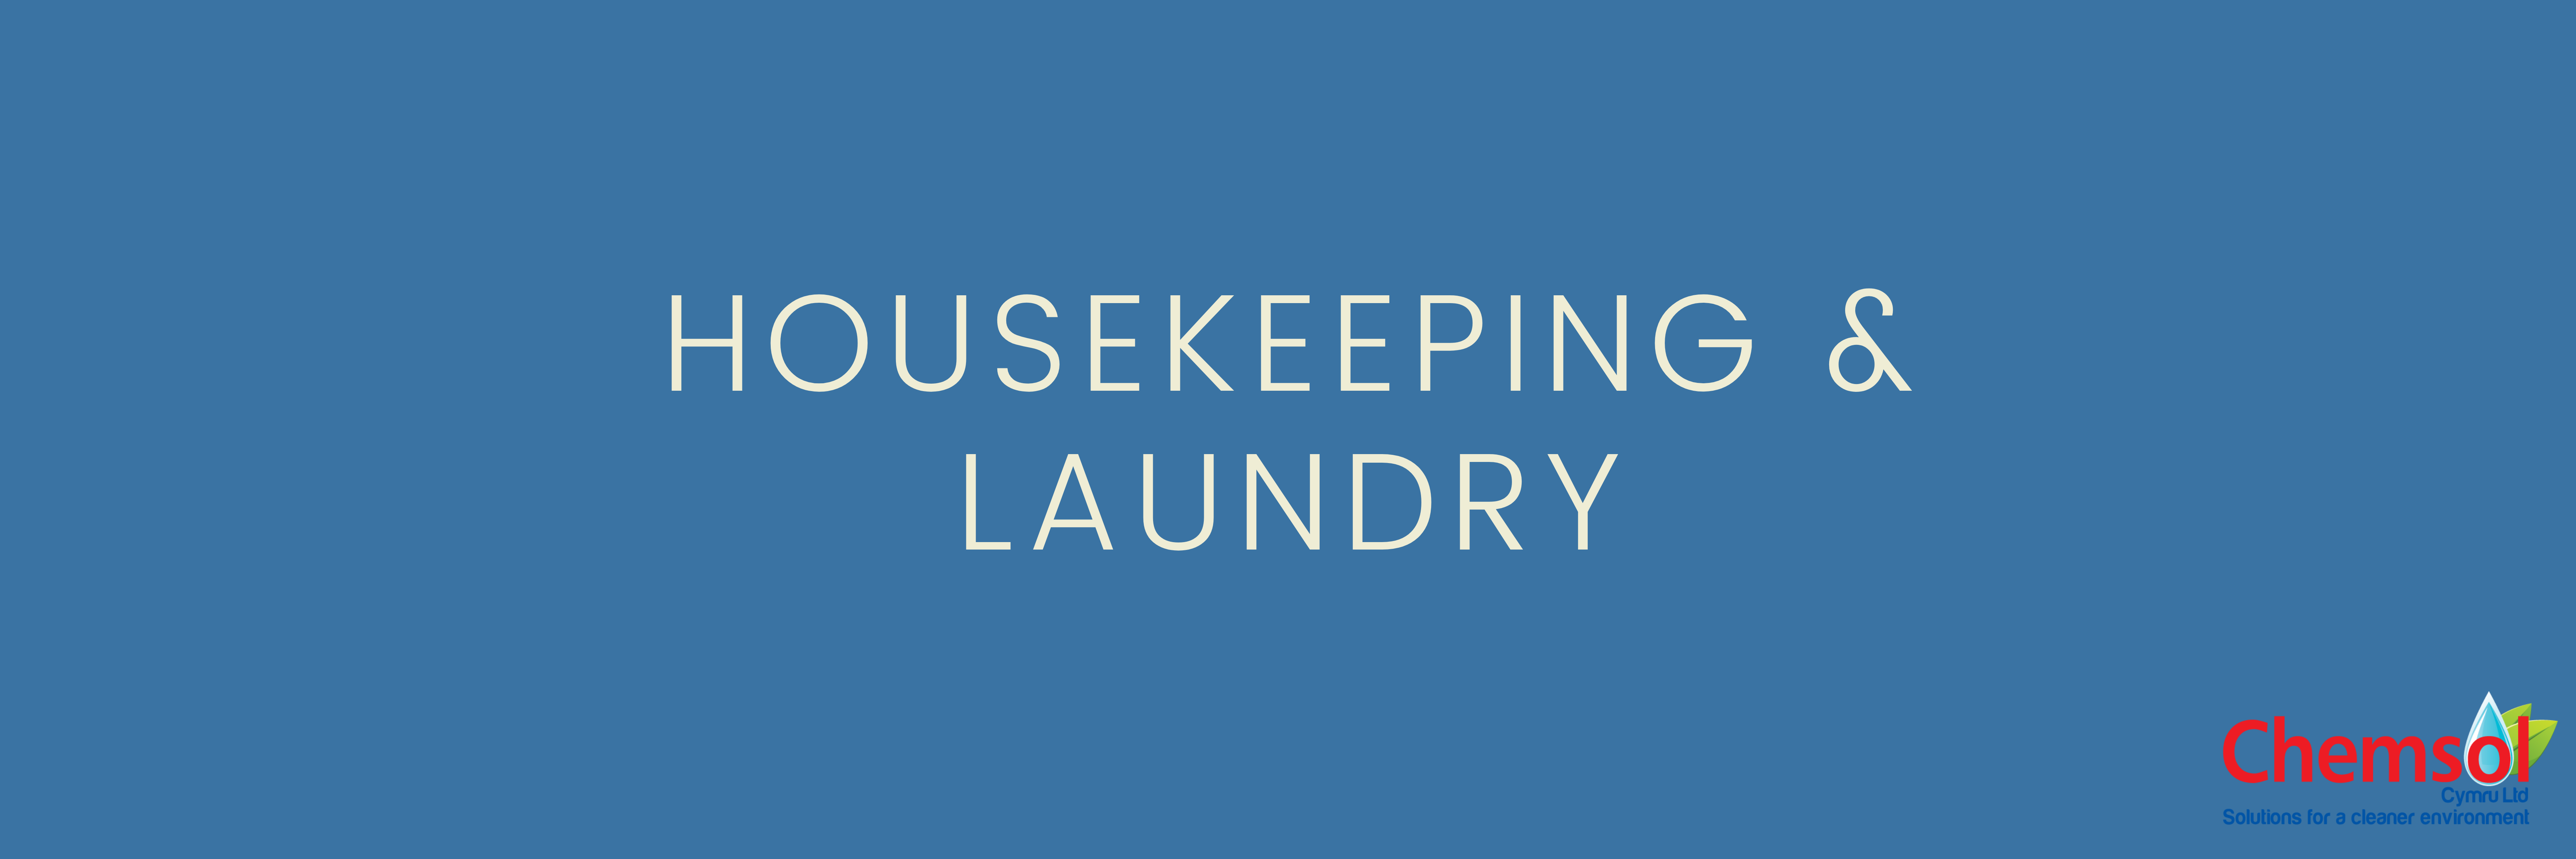 Housekeeping & Laundry